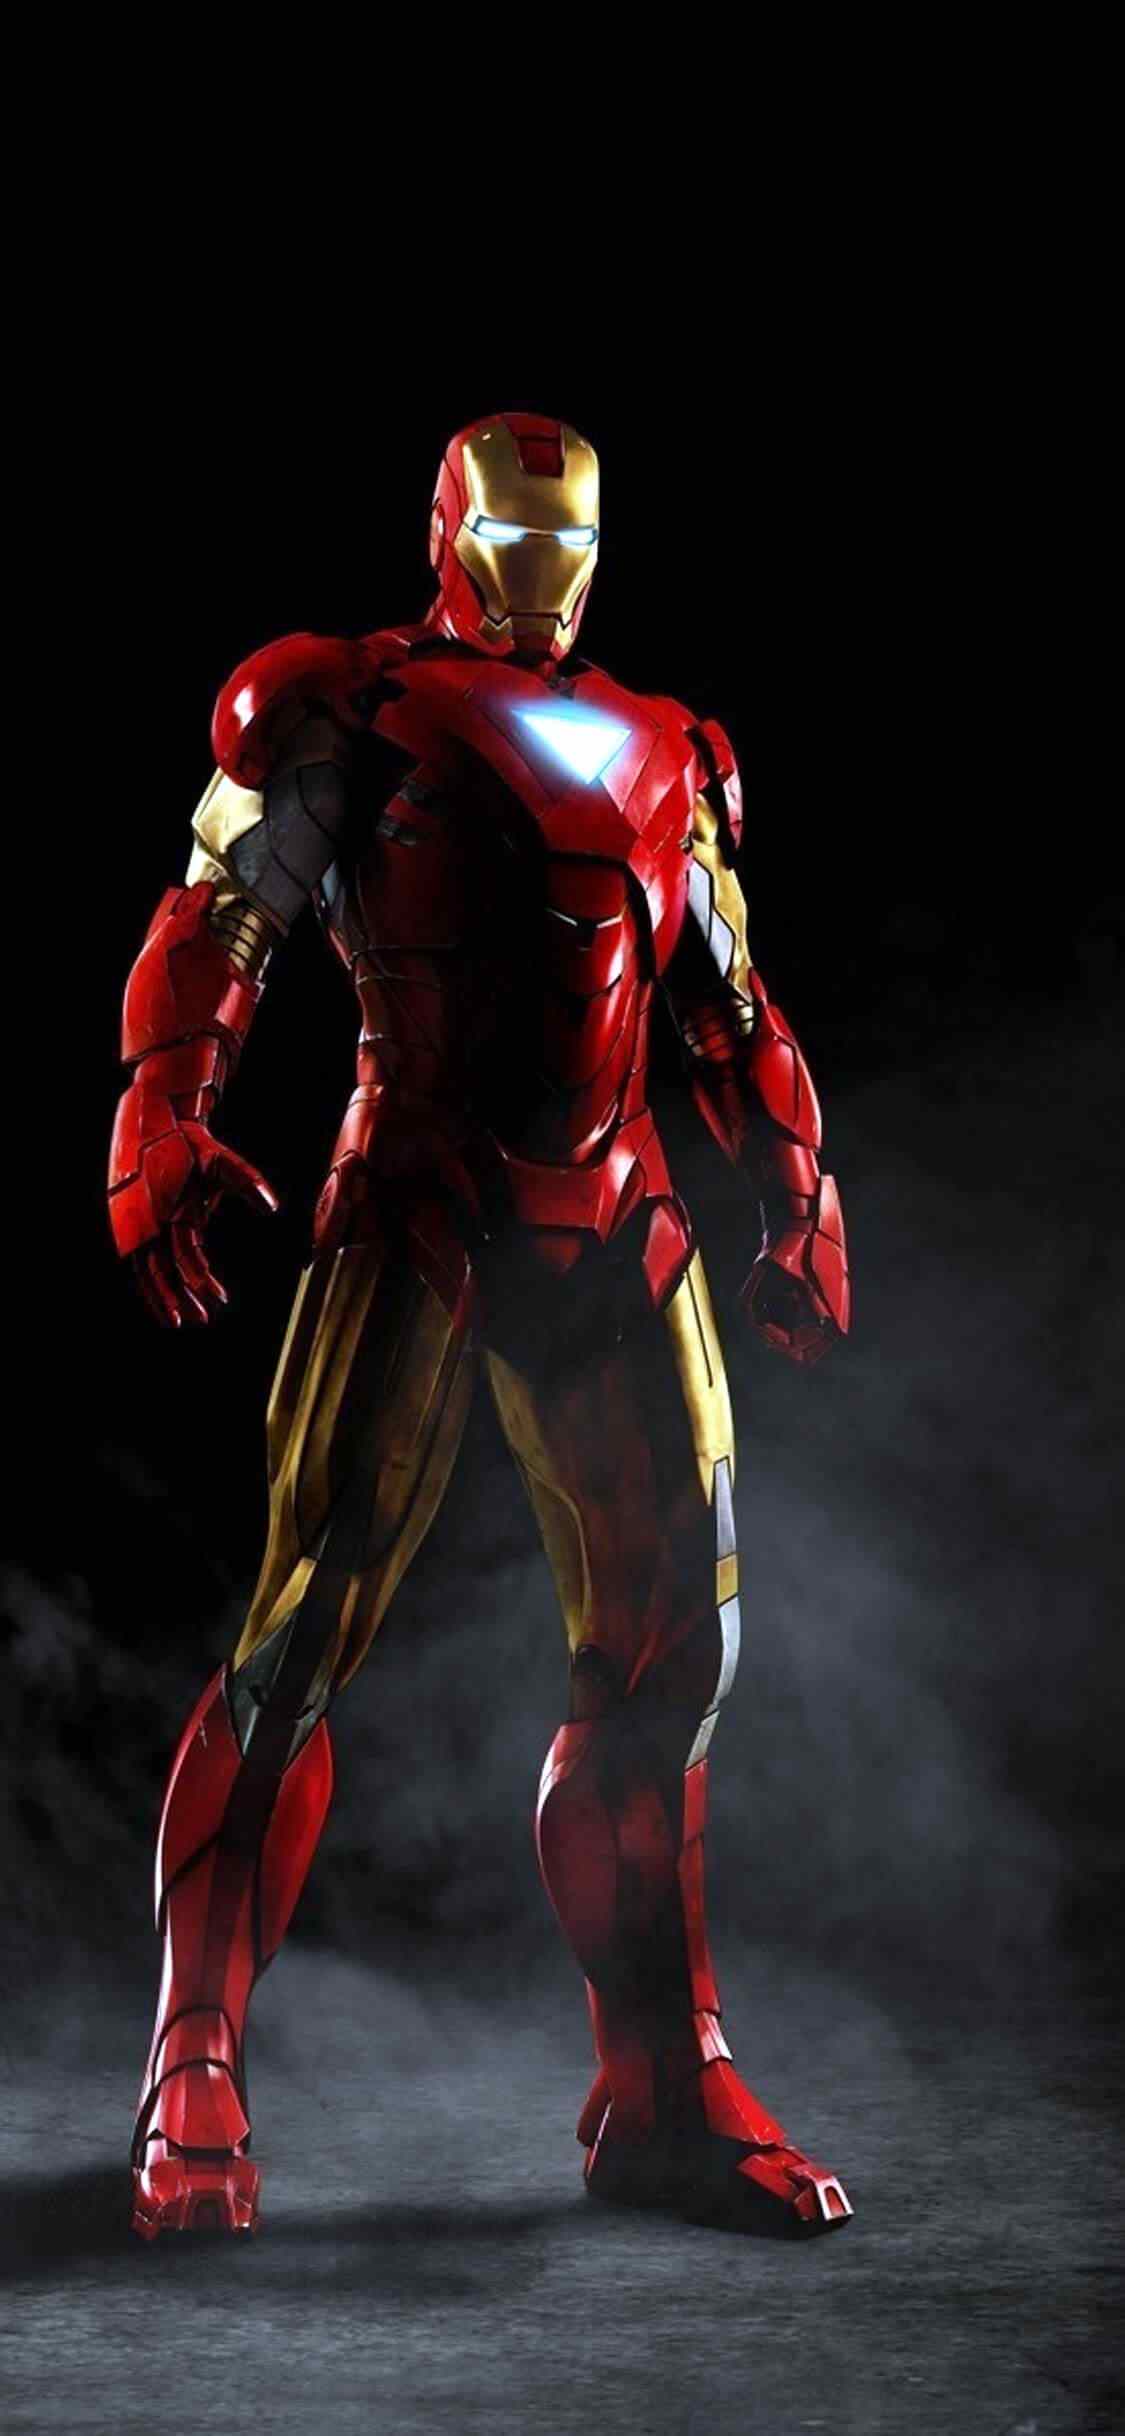 Black Iron Man Hd Wallpaper For Mobile - HD Wallpaper 